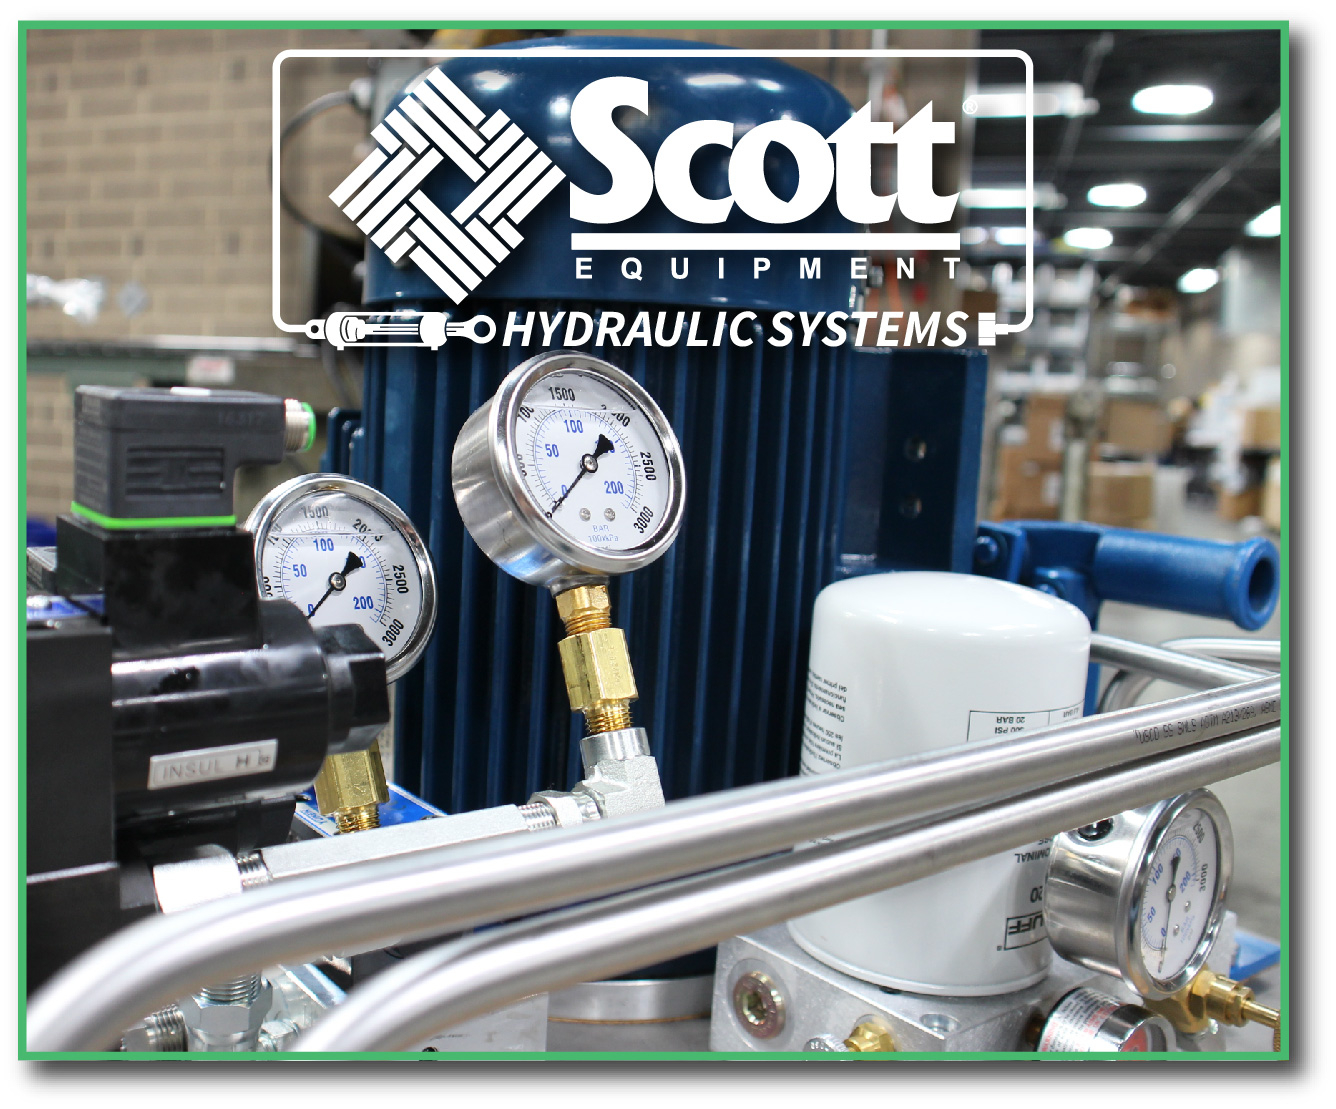 Hyraulic Training - Scott Equipment Company